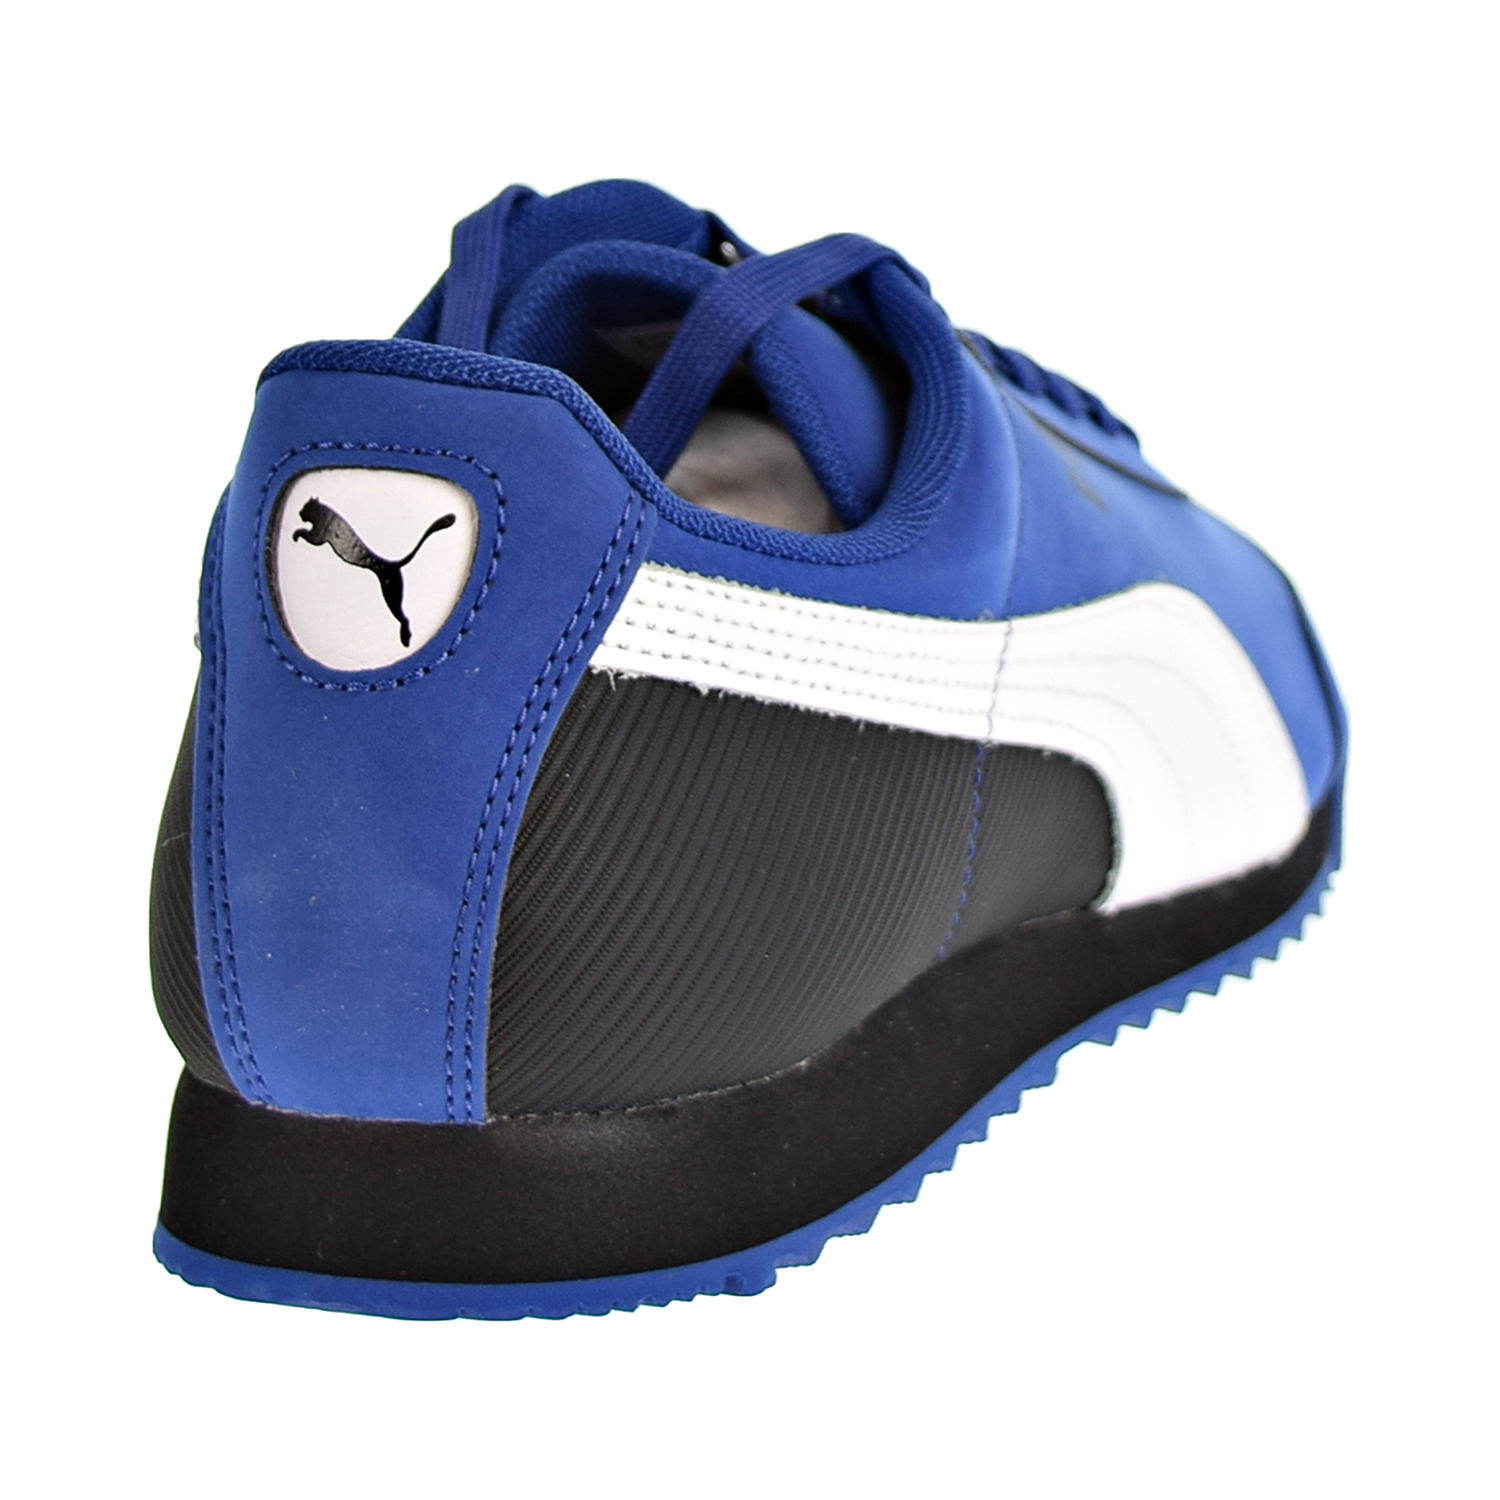 Puma Roma Retro Nubuck Men's Shoes Blue/ White/ Black 368266-01